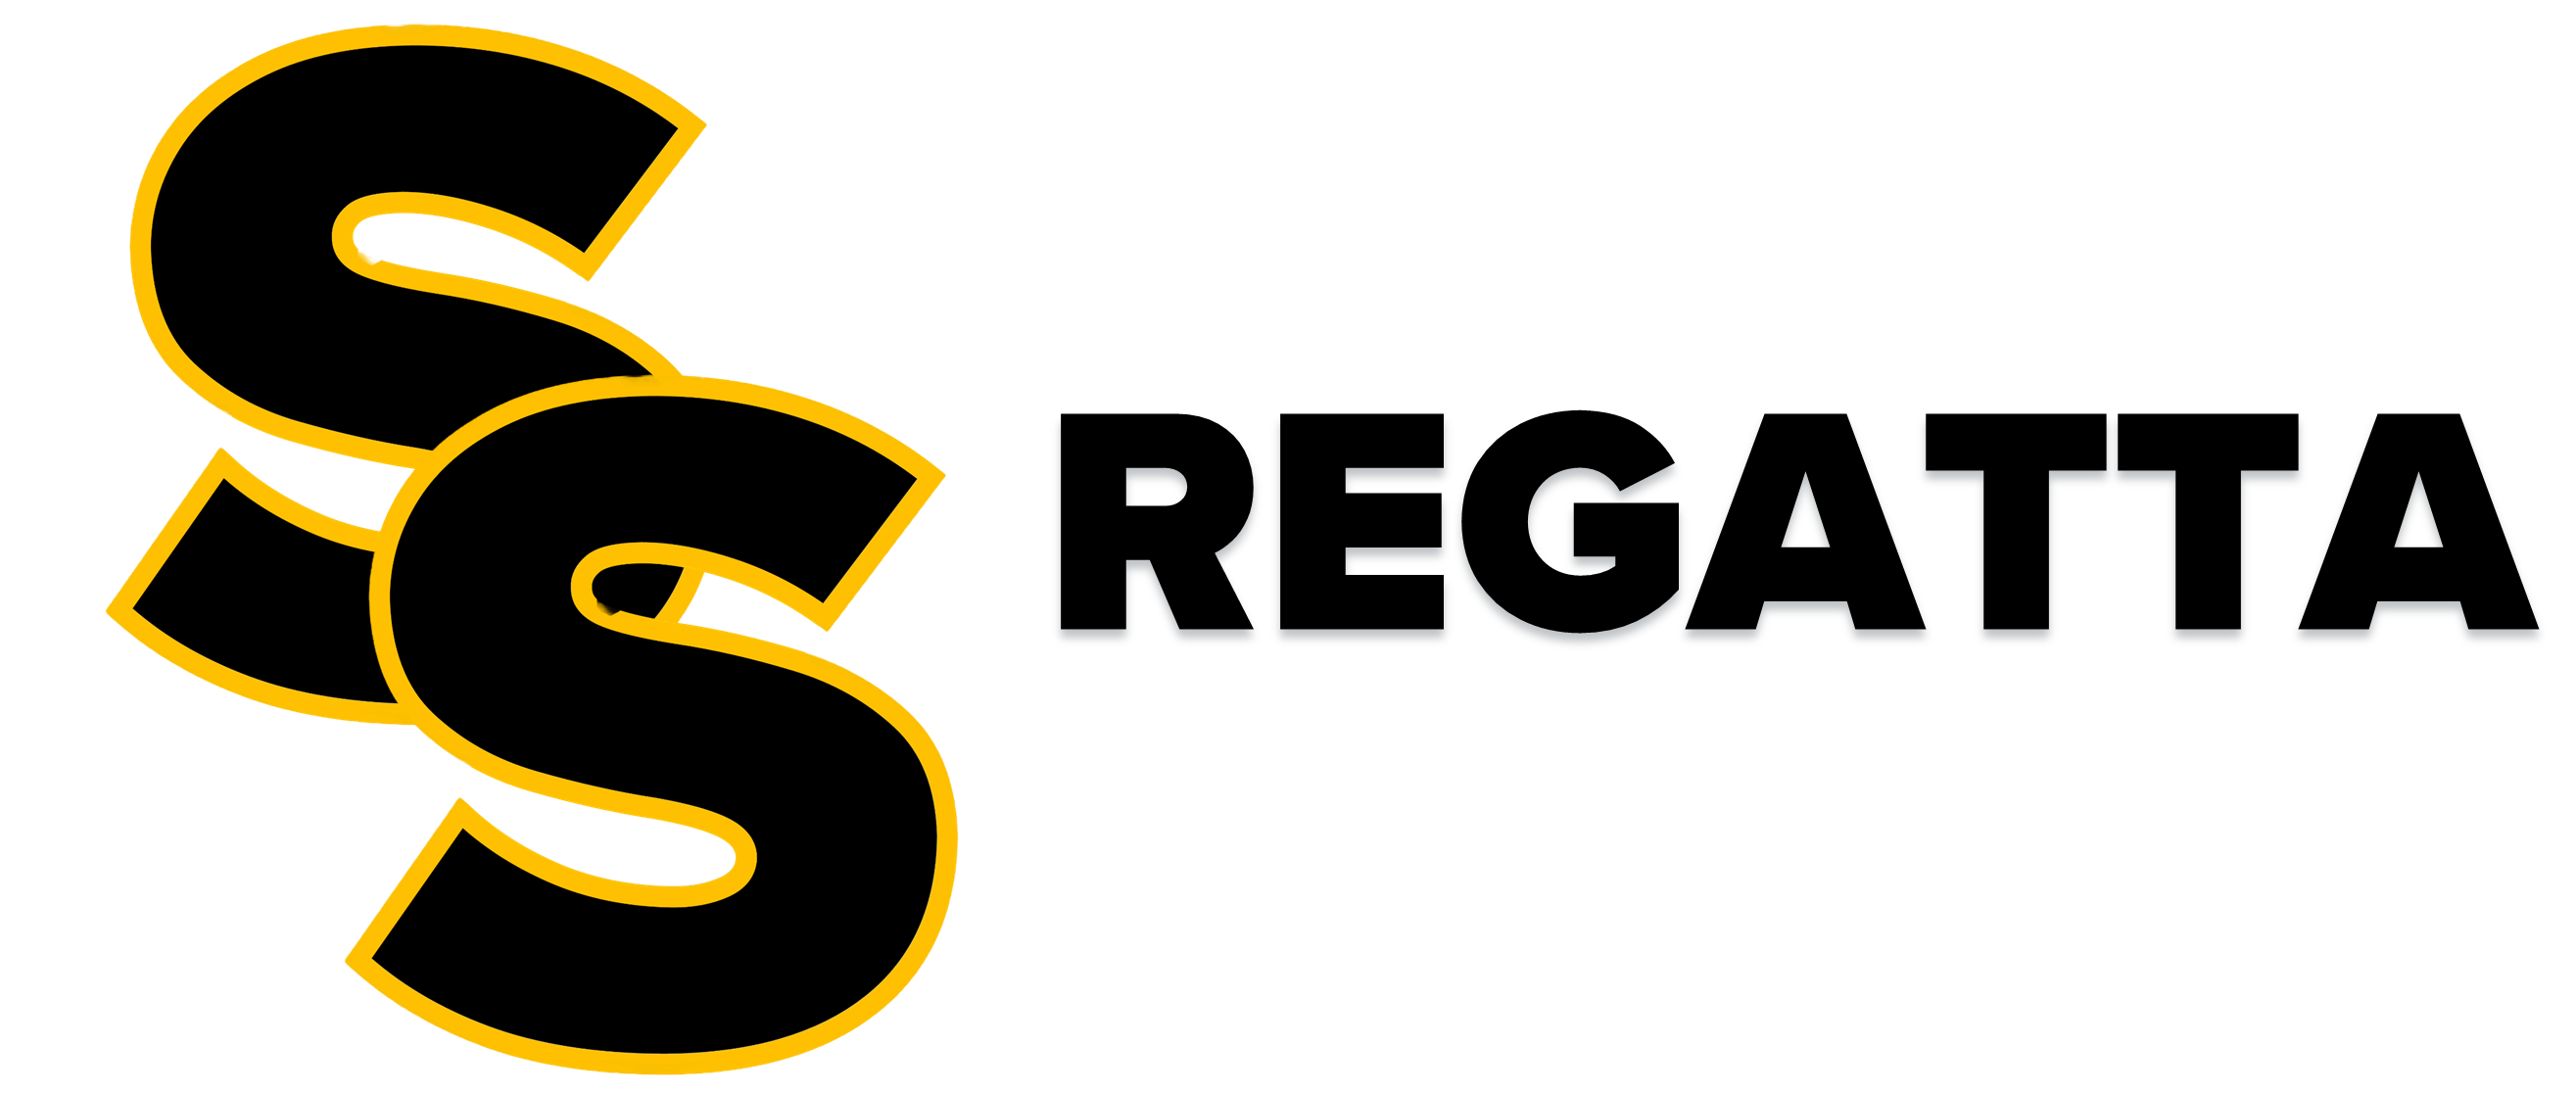 SS-Regatta.png